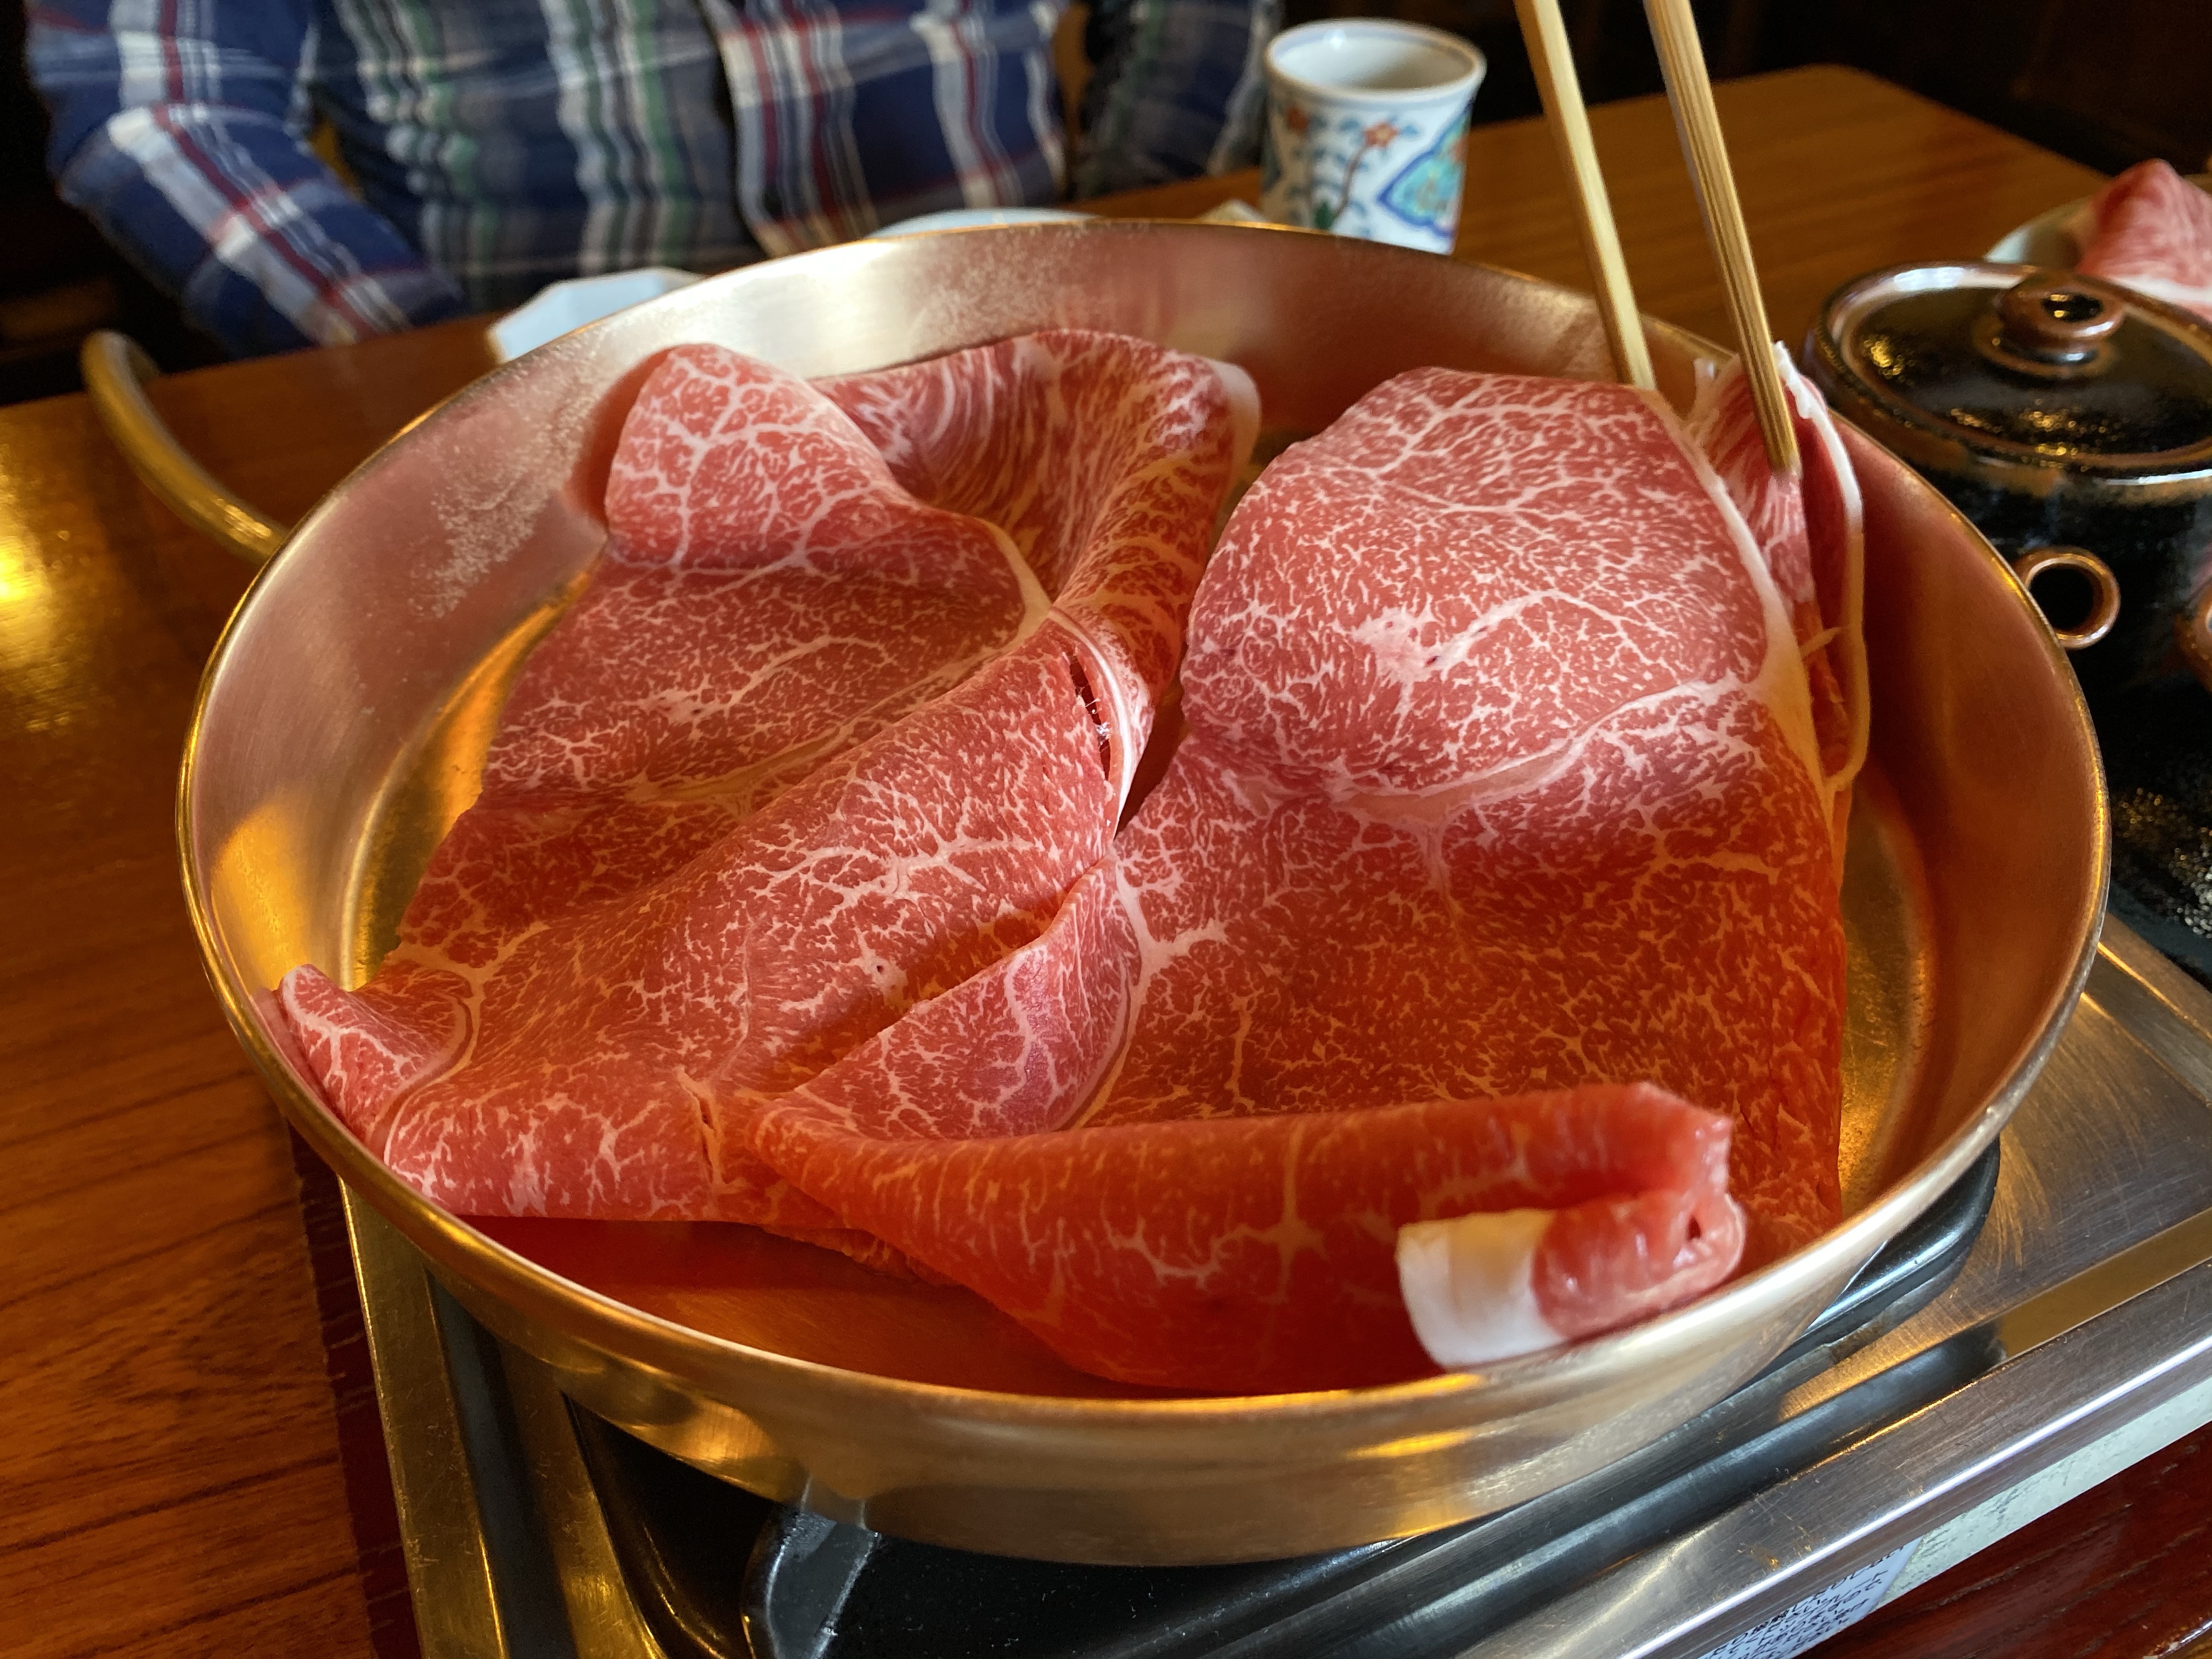 【長野市の名店】りんごで育った信州牛で有名な「すき亭」の「すき焼き定食」ランチを堪能しました♪